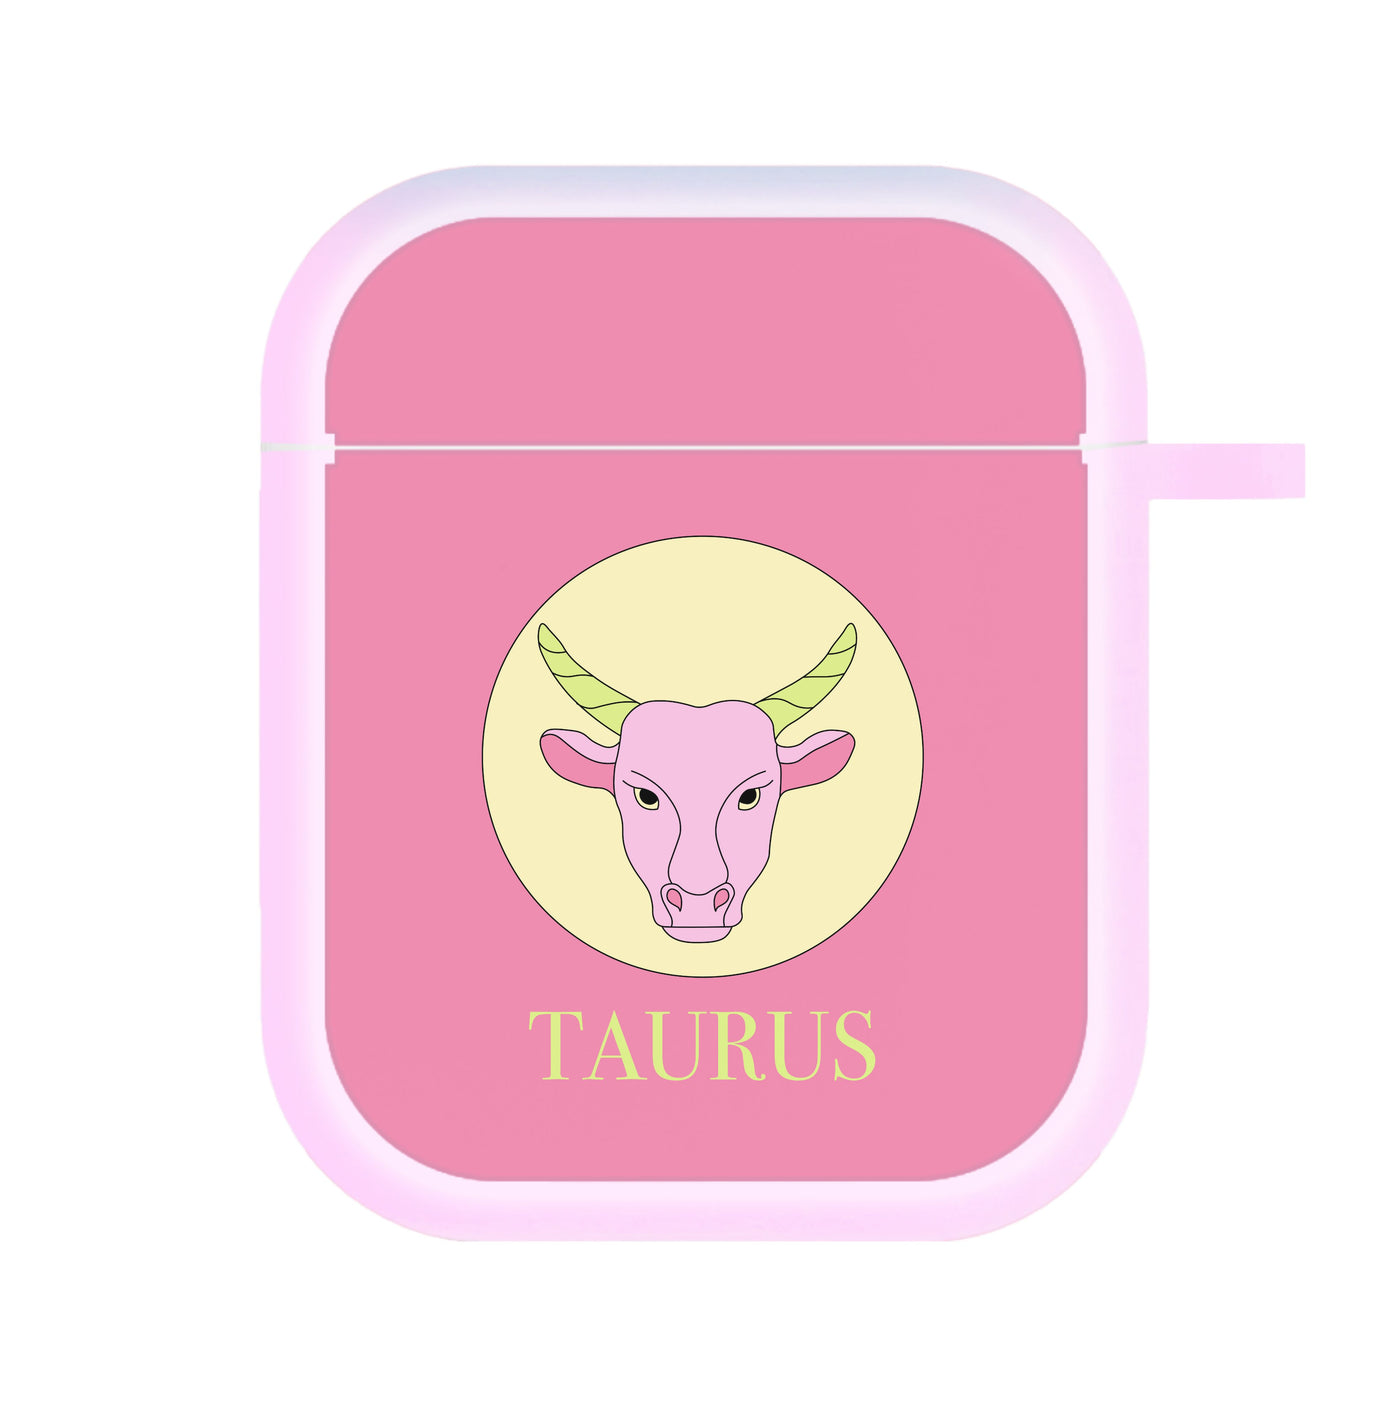 Taurus - Tarot Cards AirPods Case